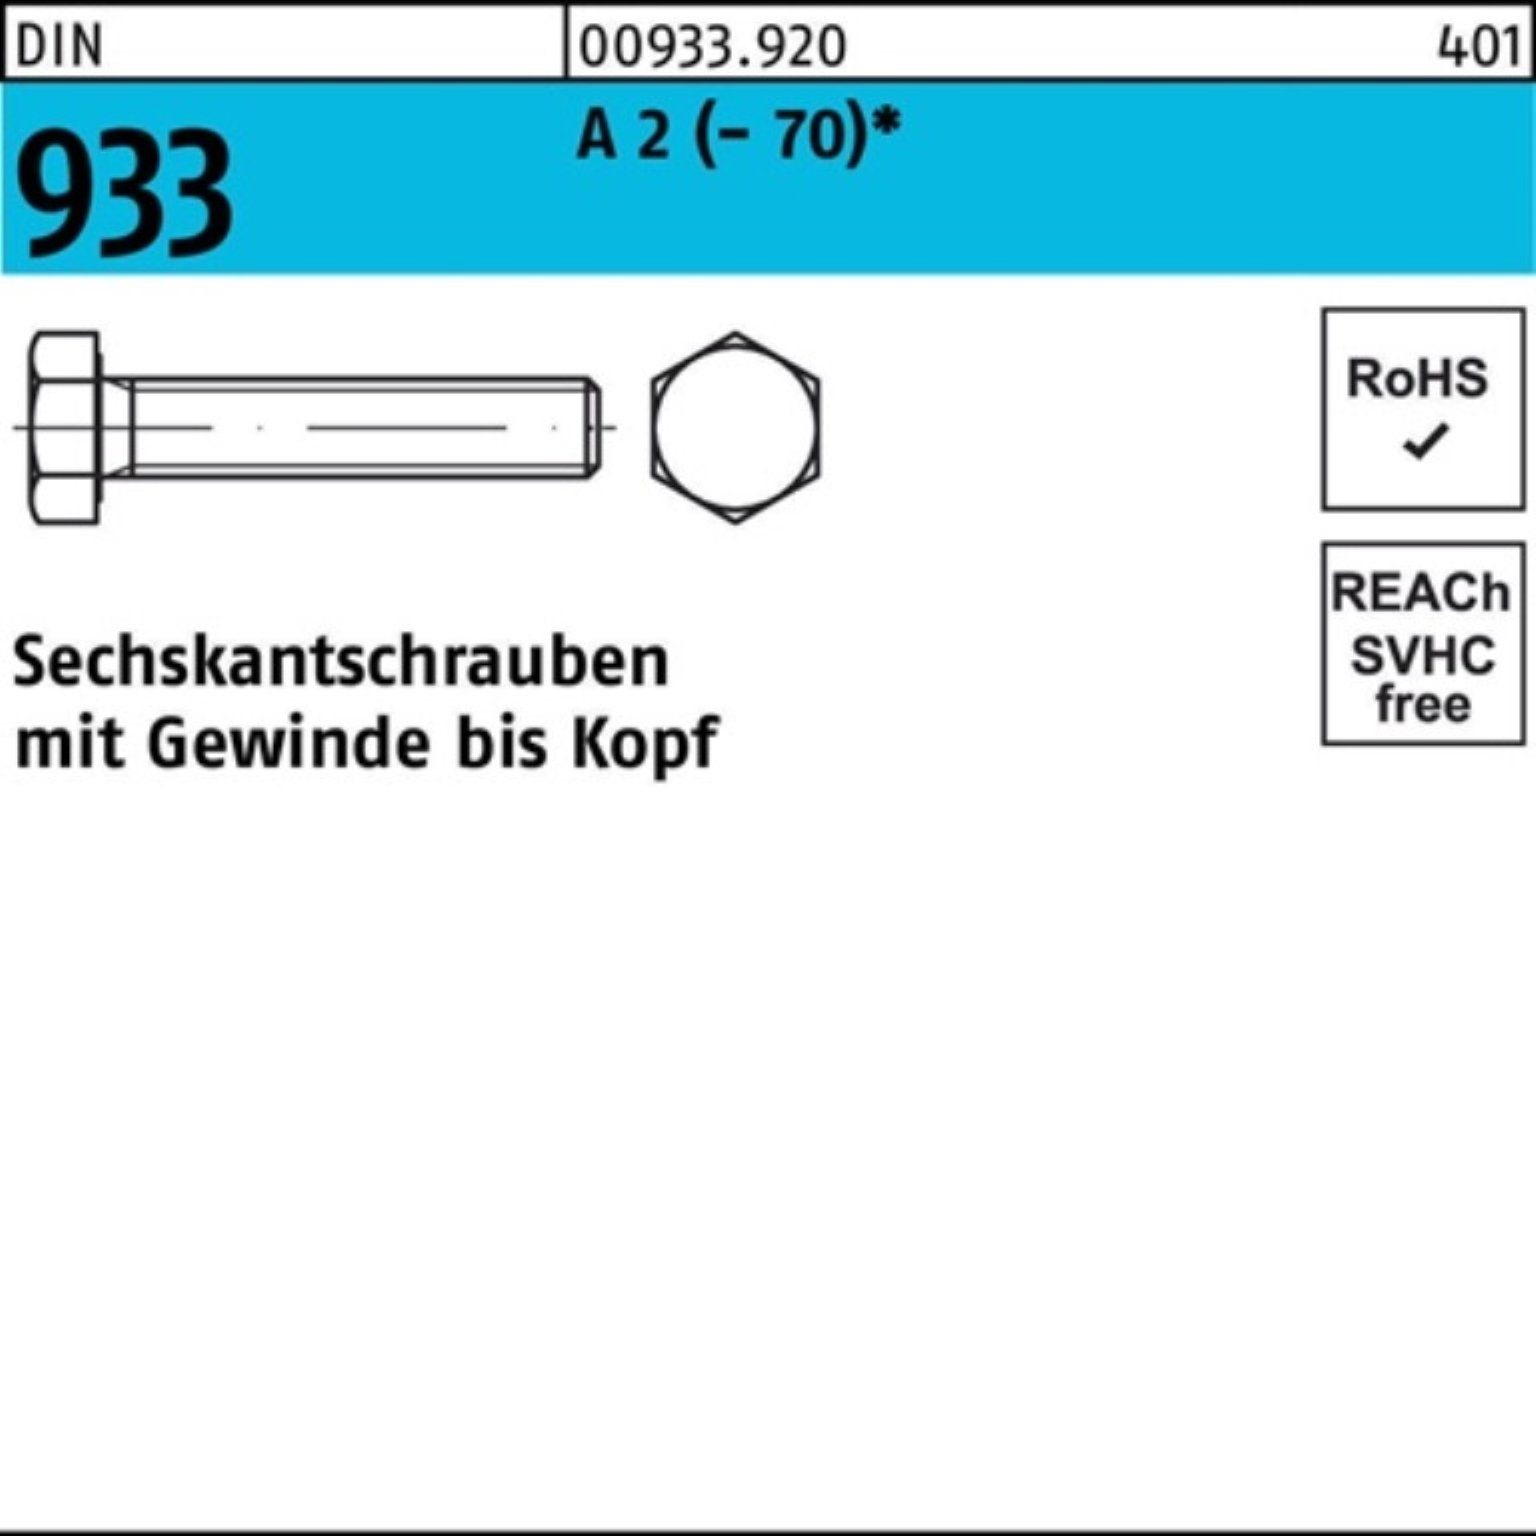 VG (70) Reyher Sechskantschraube Sechskantschraube D DIN Stück A 50 100er M14x 2 Pack 933 25